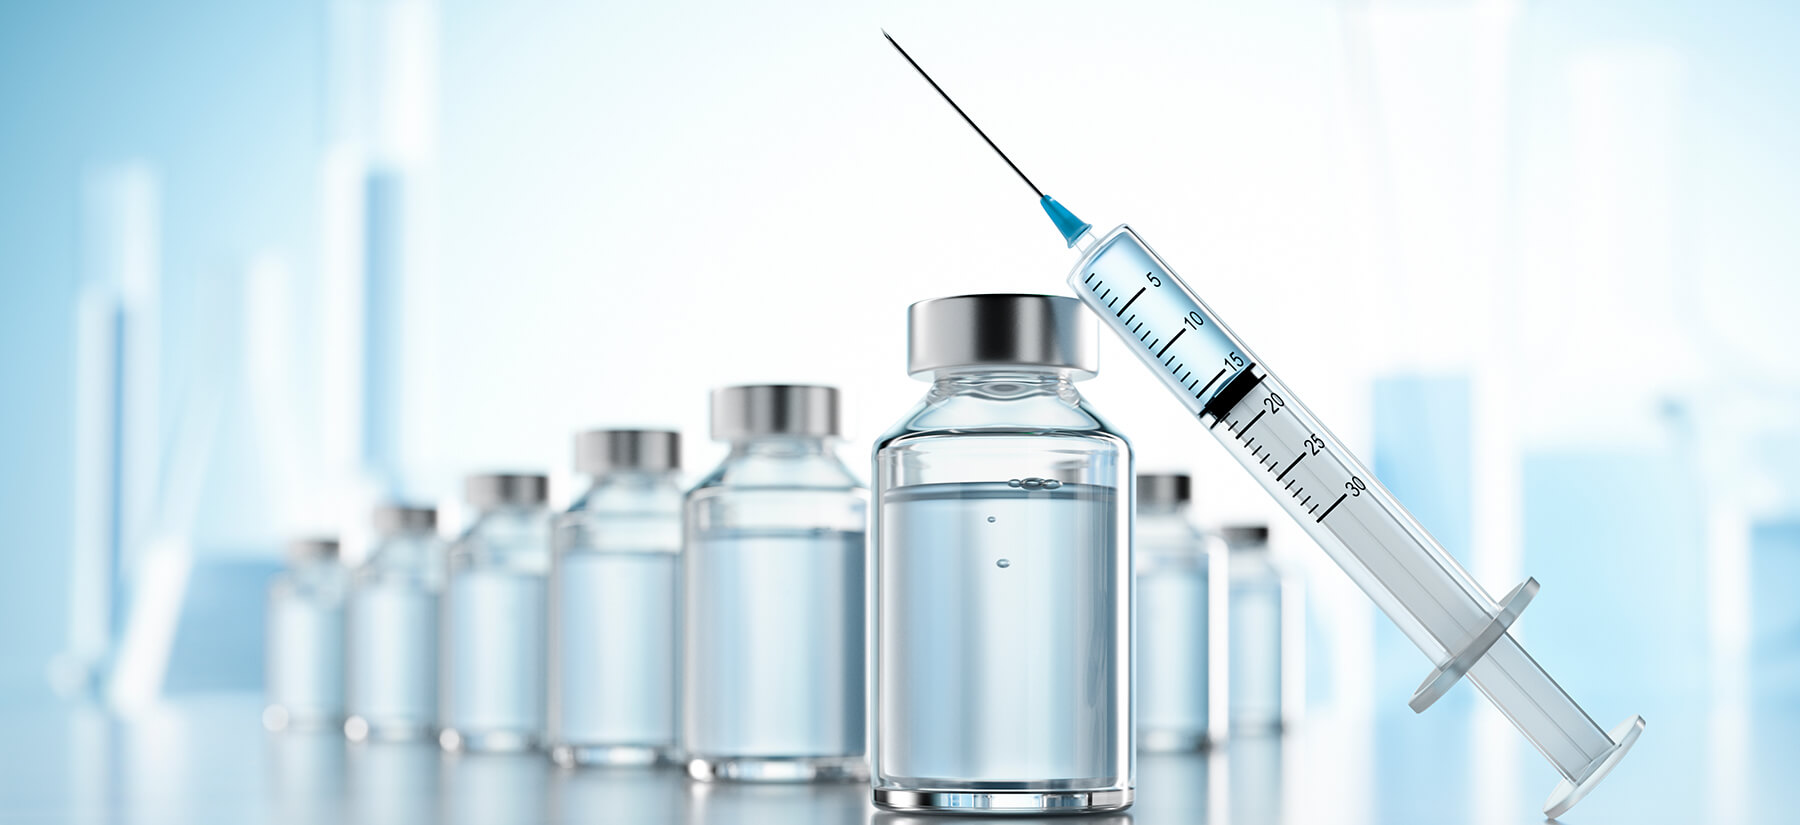 インフルエンザ予防接種終了のお知らせ